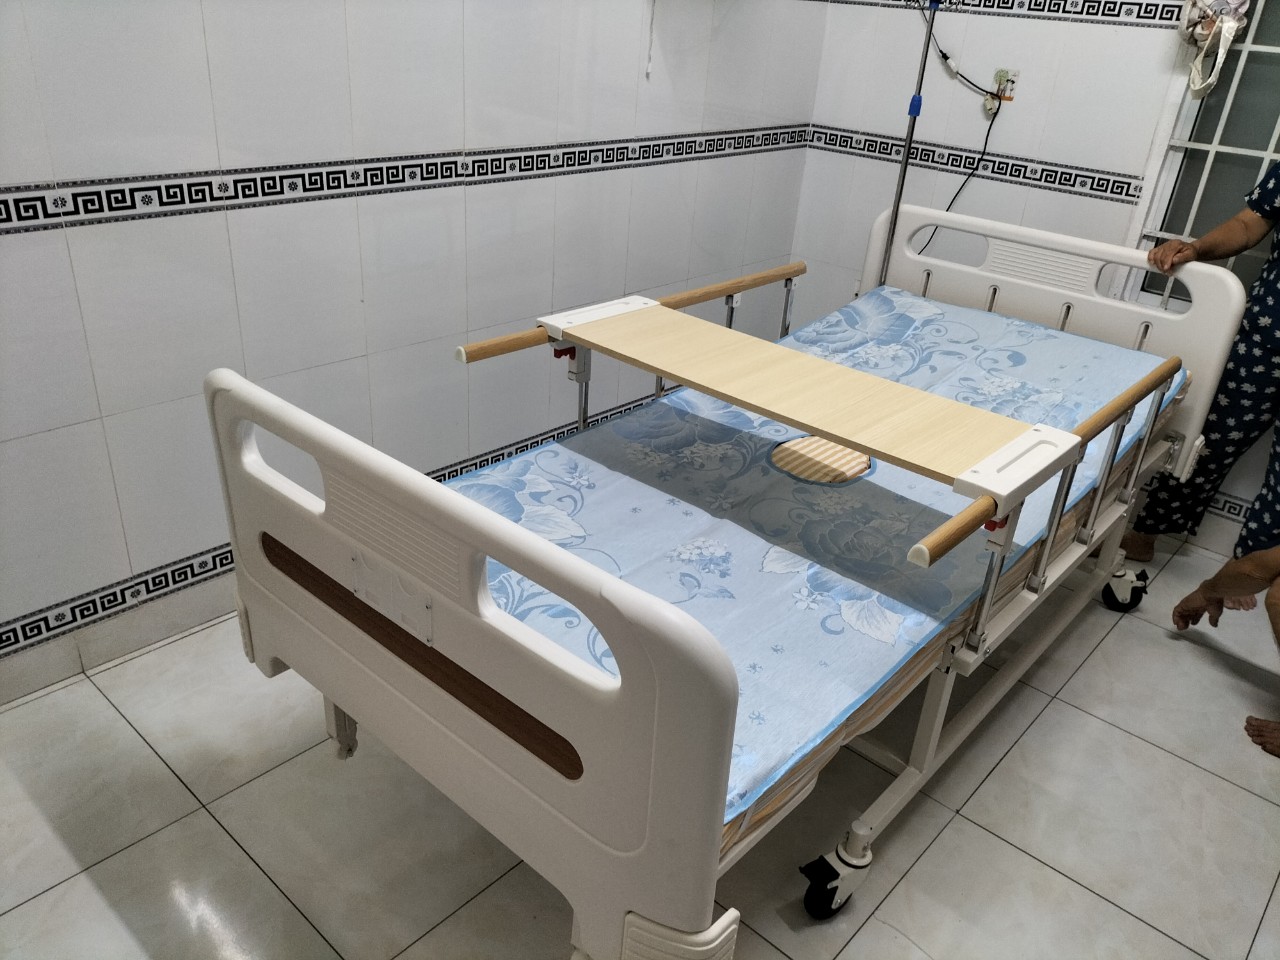 Tôi đang ở quận Tân Phú Tp Hồ Chí Minh thì mua giường y tế ở đâu giá tốt?